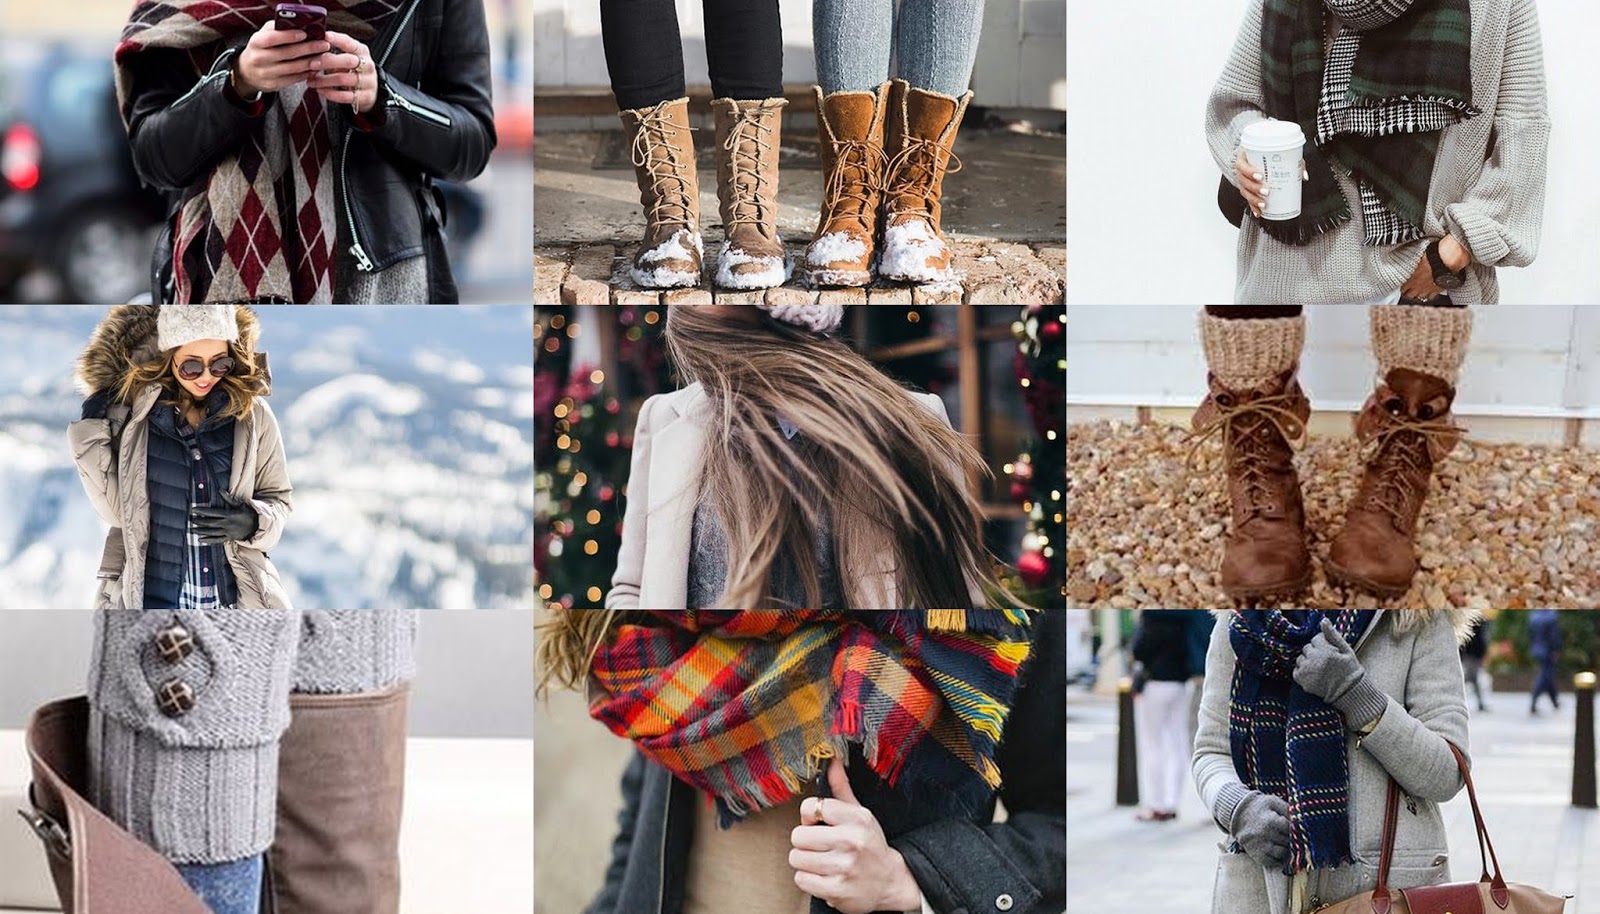 Одеваться тепло надо. Одеться тепло и красиво. Тепло и стильно зимой. Тепло и красиво одеться зимой. Стильно но тепло одеться зимой.